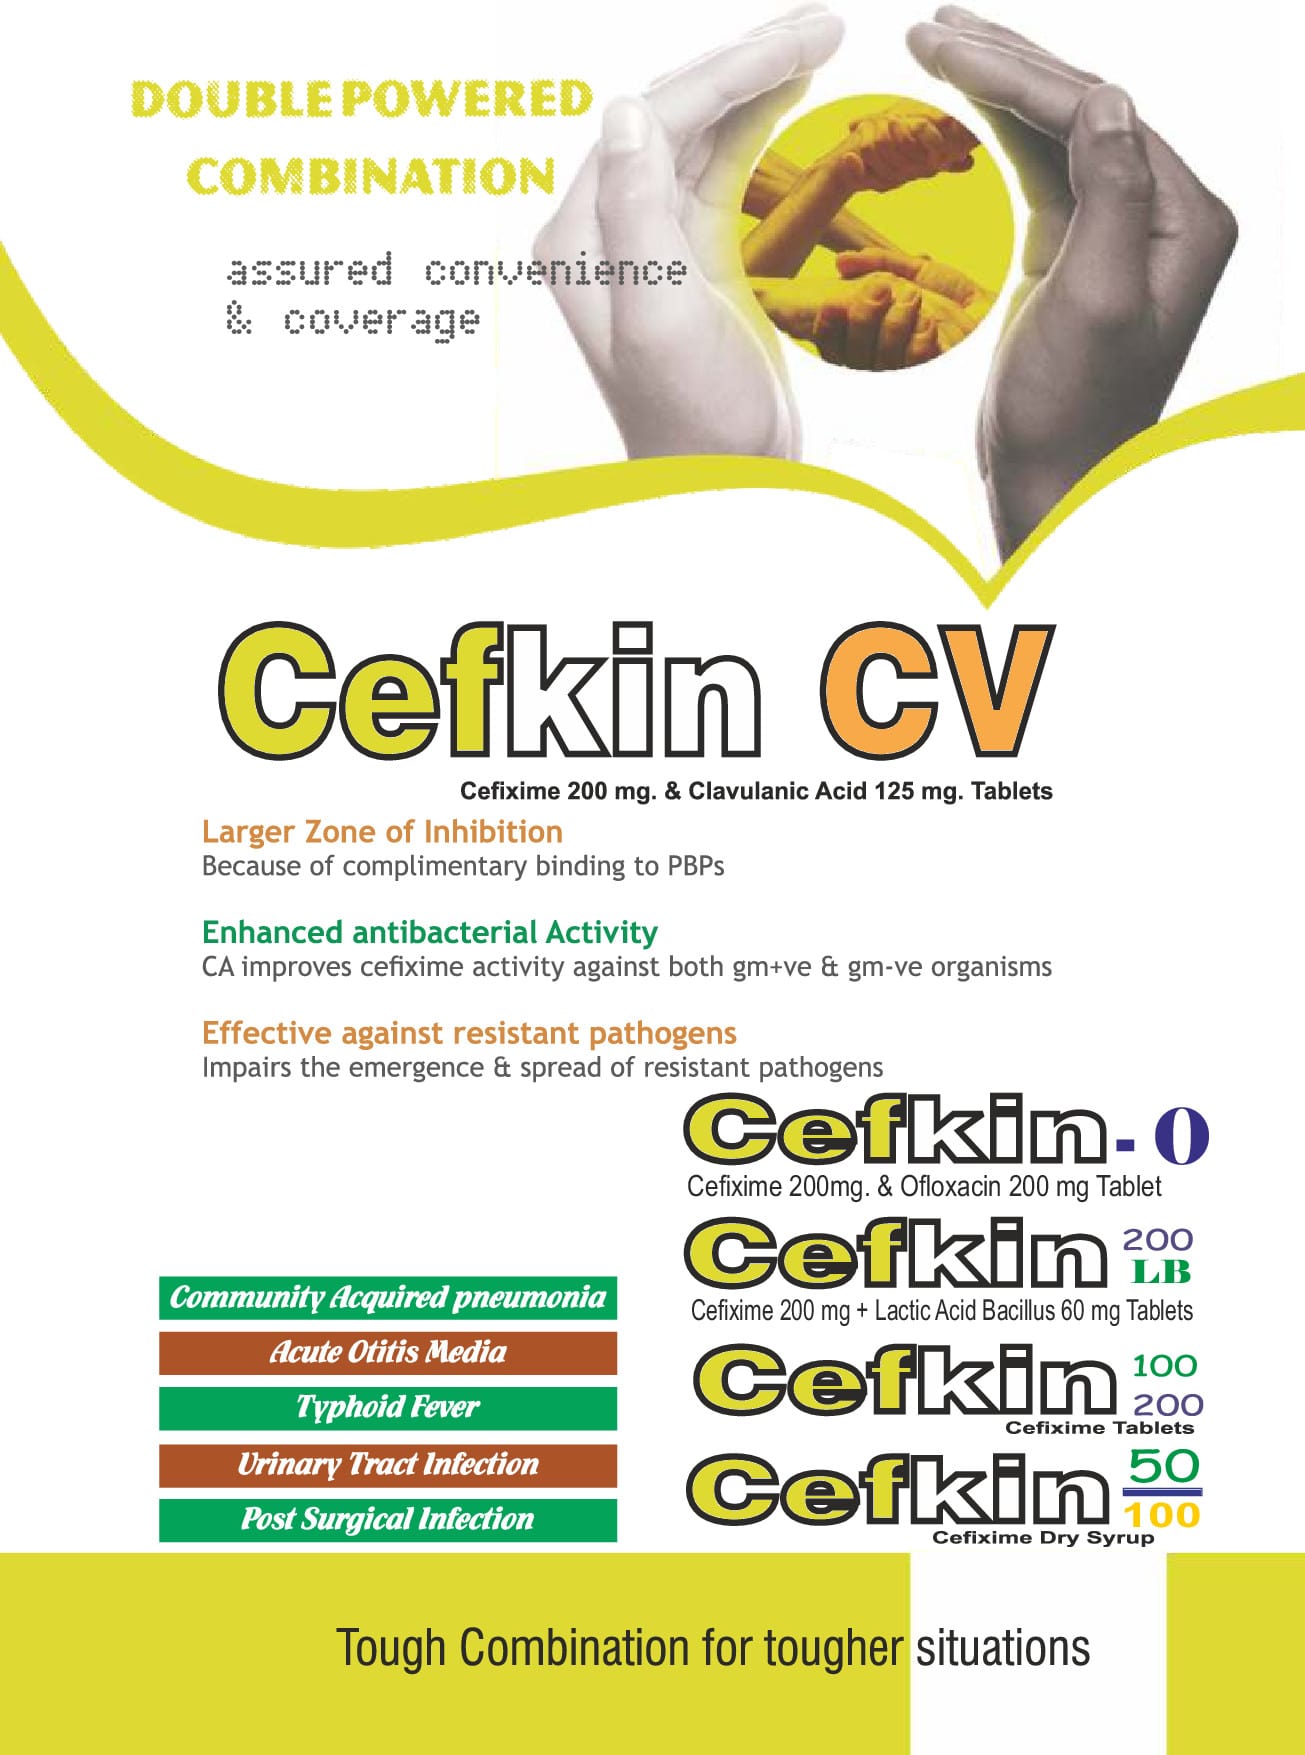 Cefkin-CV